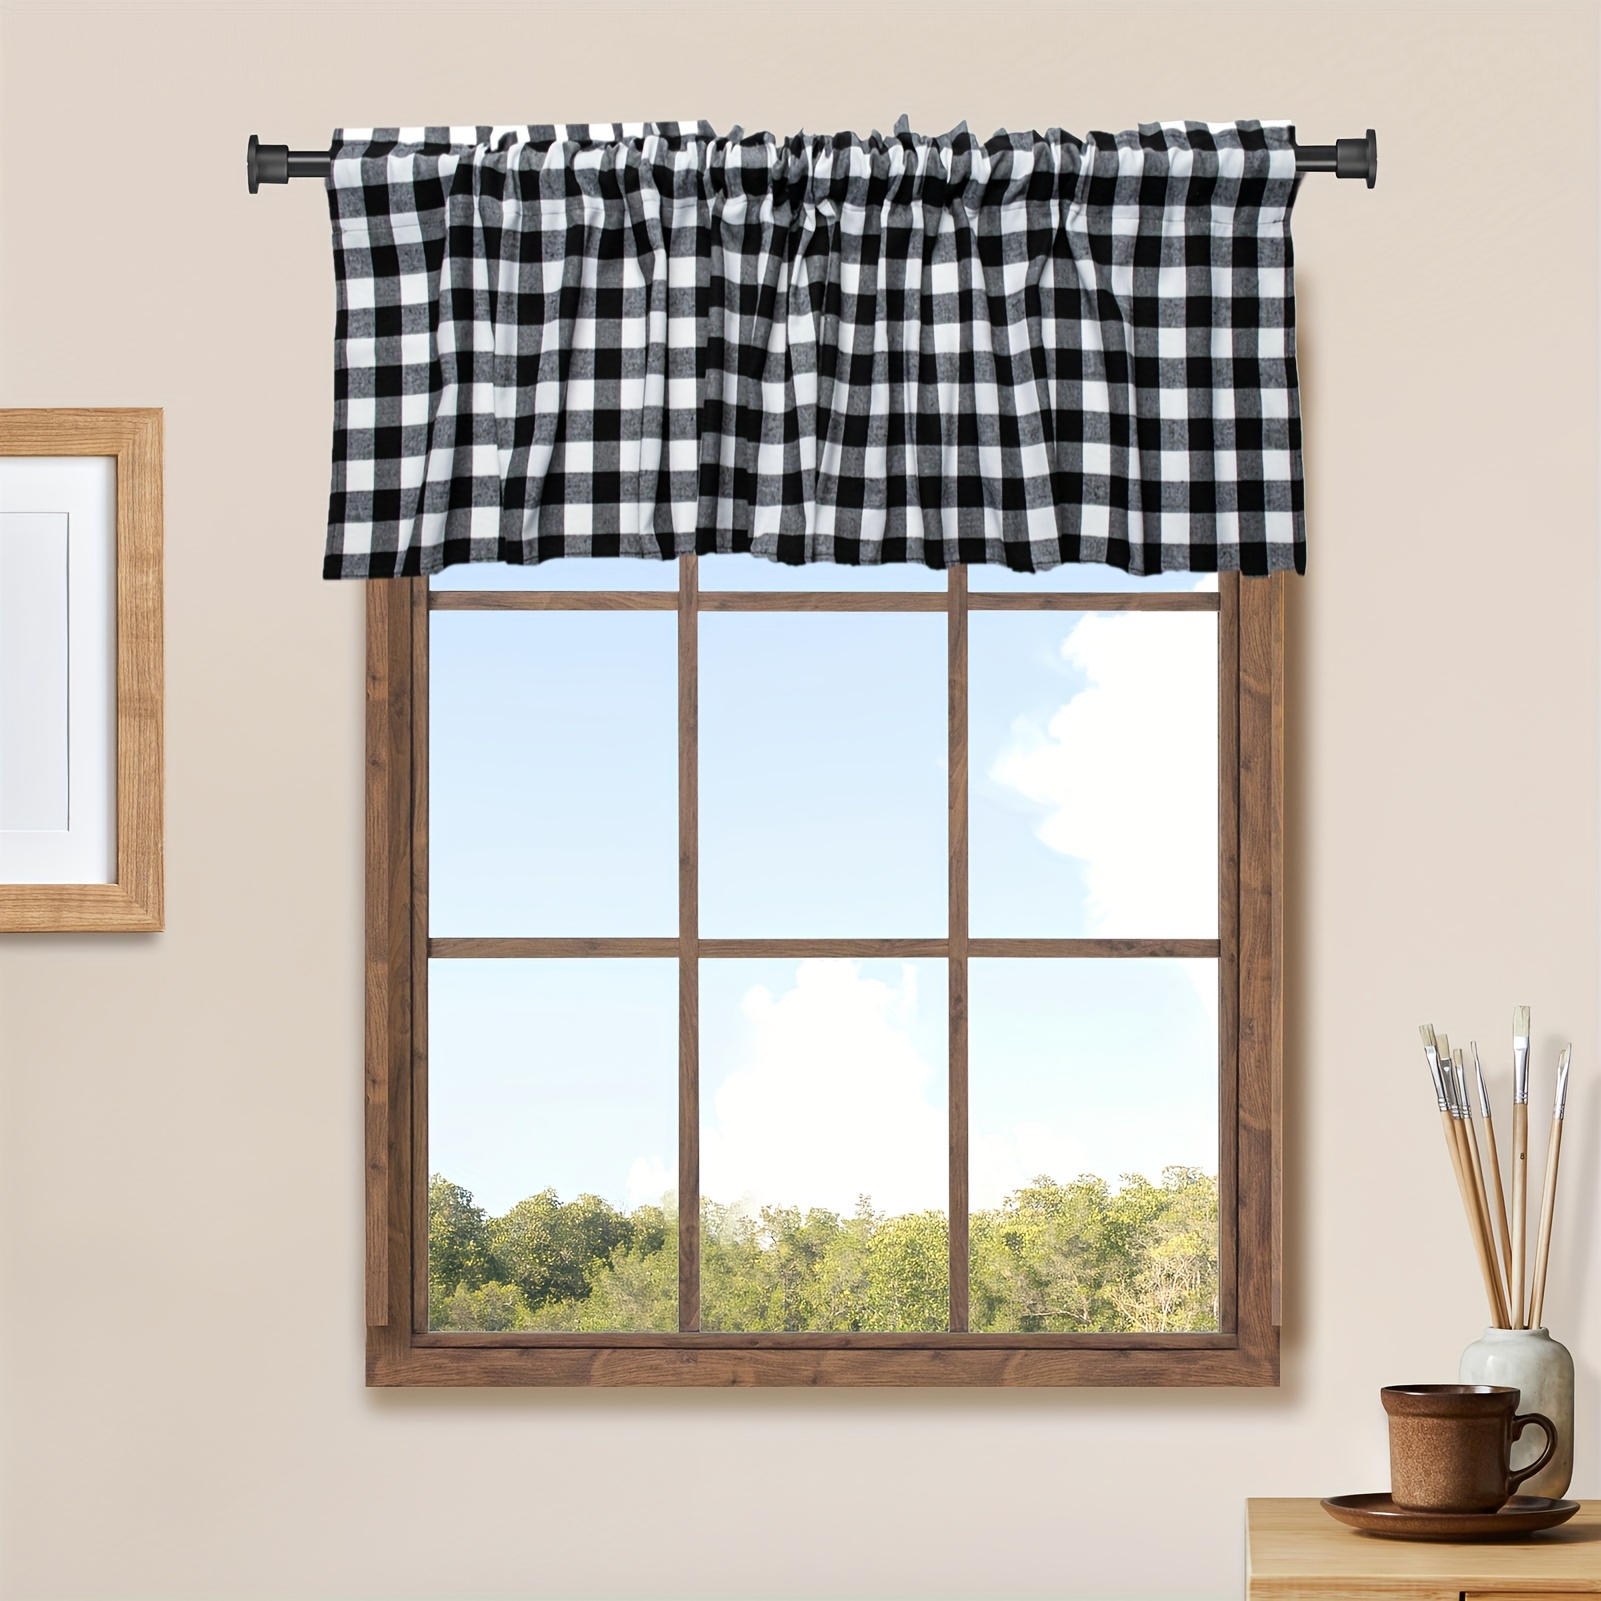  Cenefa de cortina para decoración de ventana, bolsillo para  barra, cortinas cortas con panel de calabaza de granja de otoño a cuadros  blancos y negros, cortinas de tratamiento de ventana para